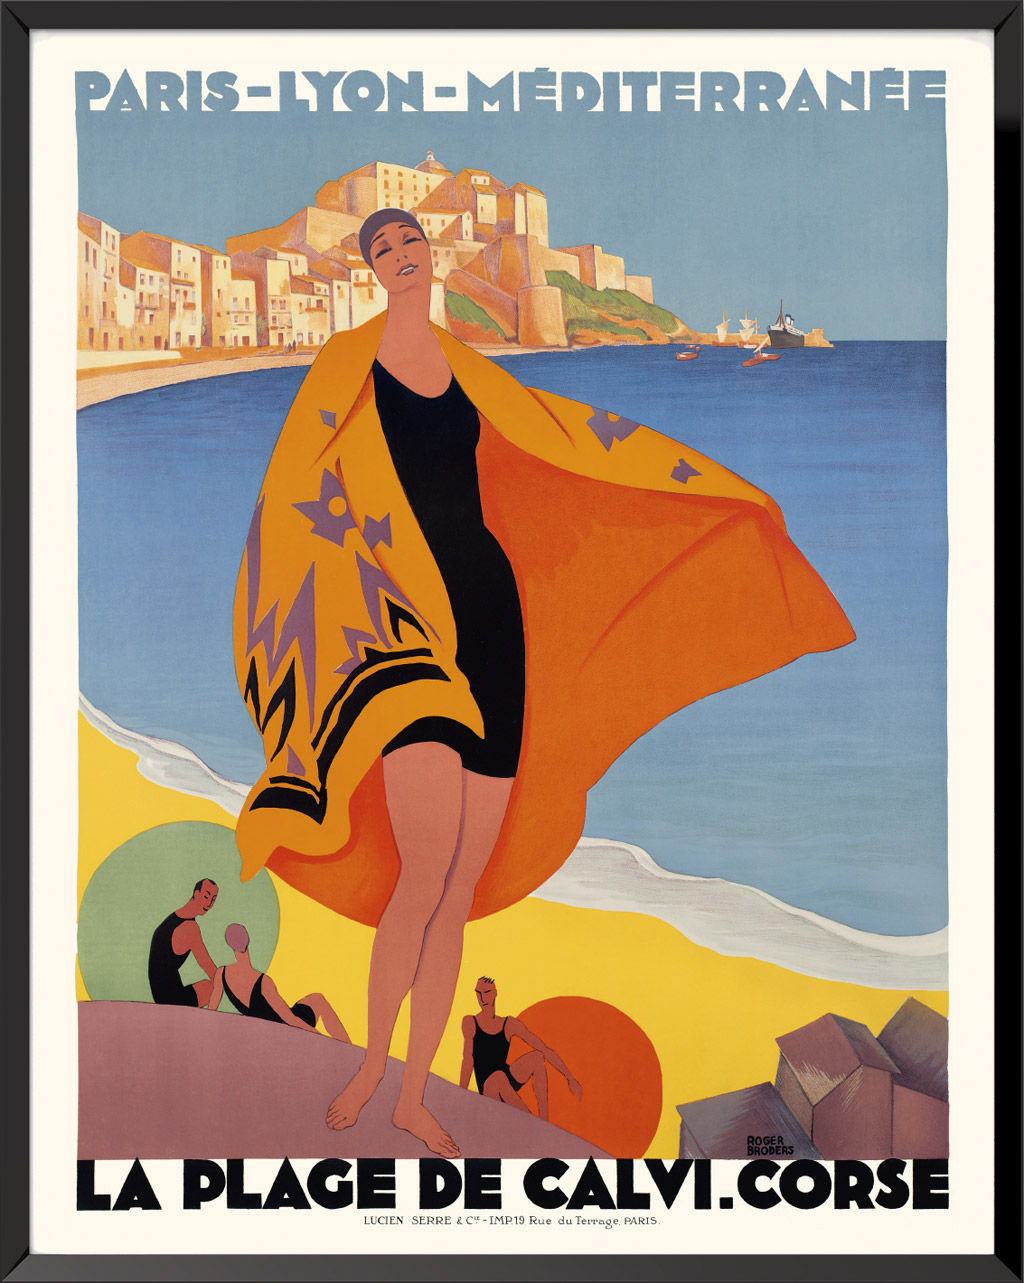 Affiche La plage de Calvi Corse de Roger Broders